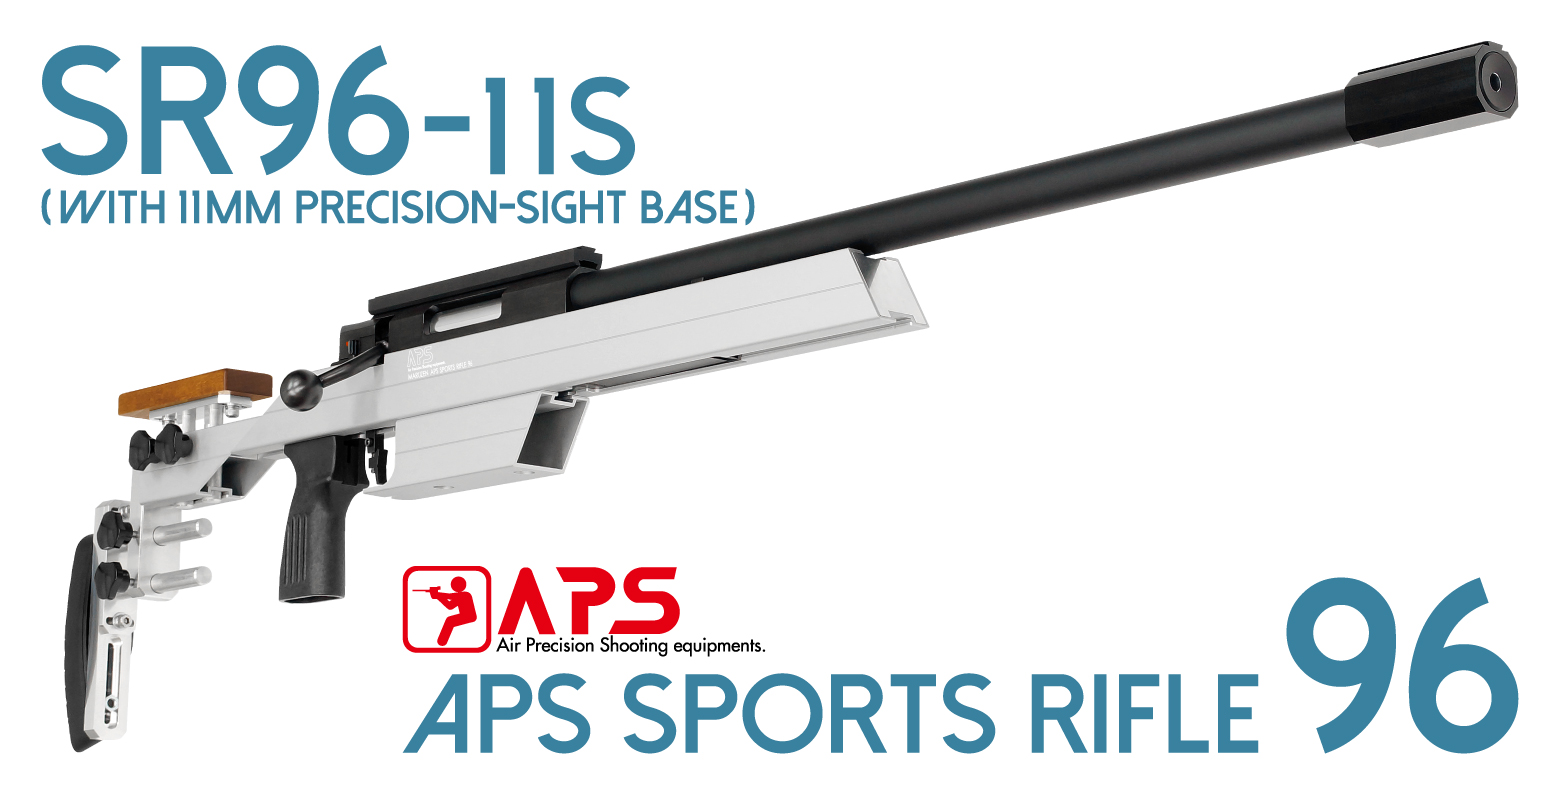 APSシリーズ | 【製品出荷情報】エアースポーツライフル「APS SR96-20S 